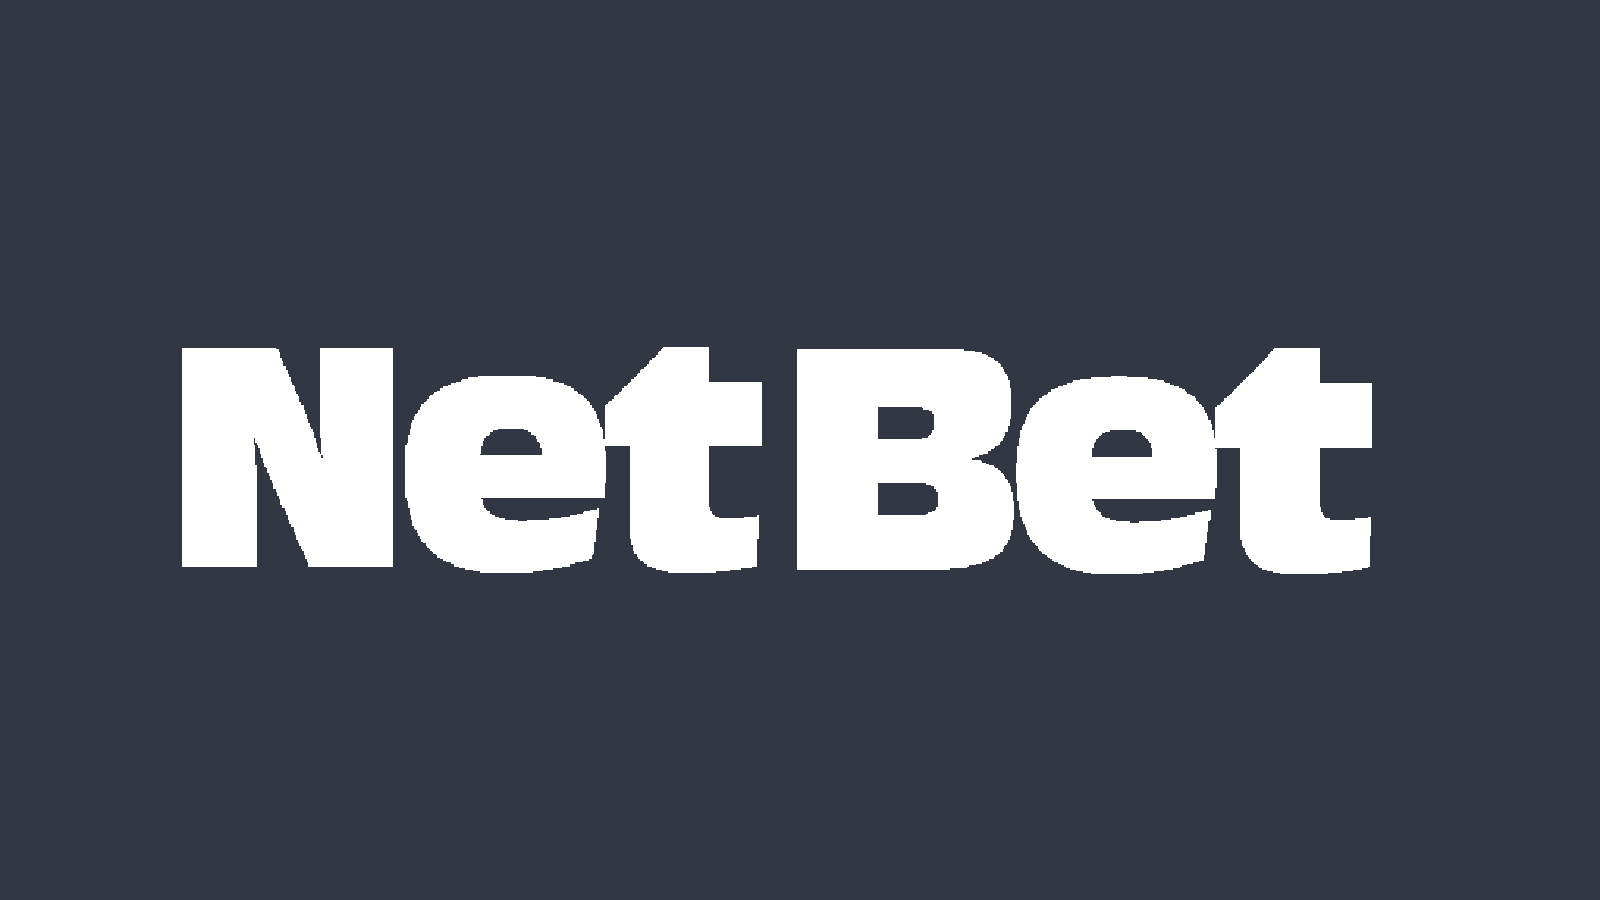 NetBet & Amatic - Powering Up iGaming